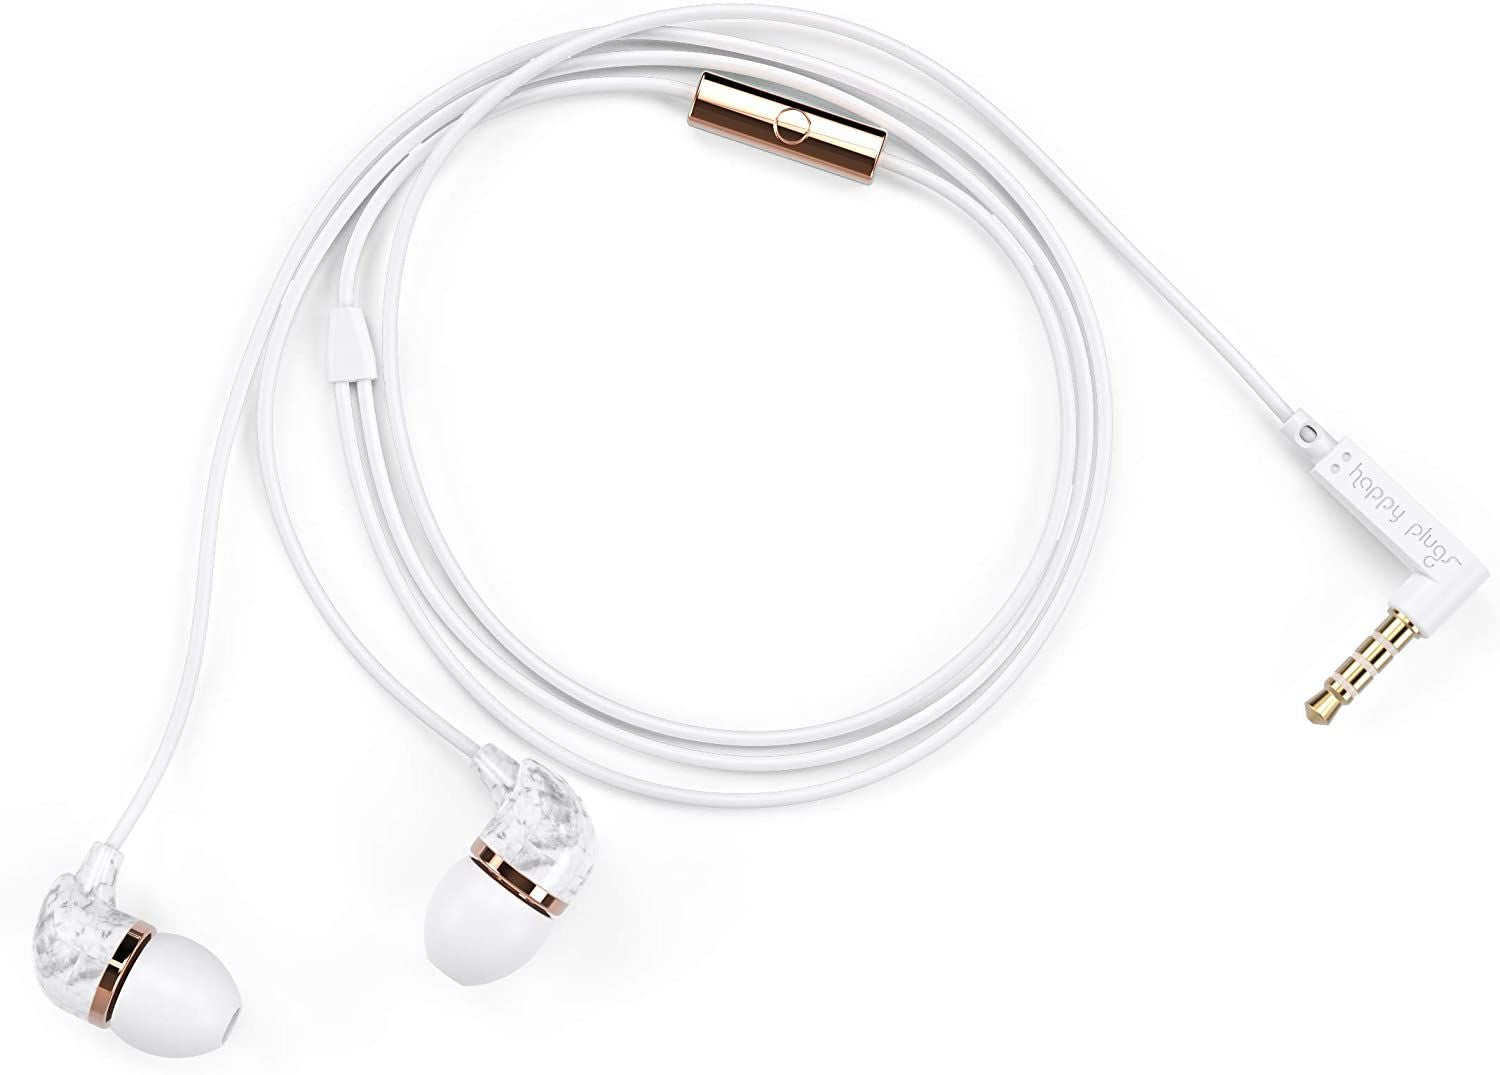 Happy Plugs Écouteurs intra-auriculaires Fashion-Tech avec micro et télécommande, marbre blanc